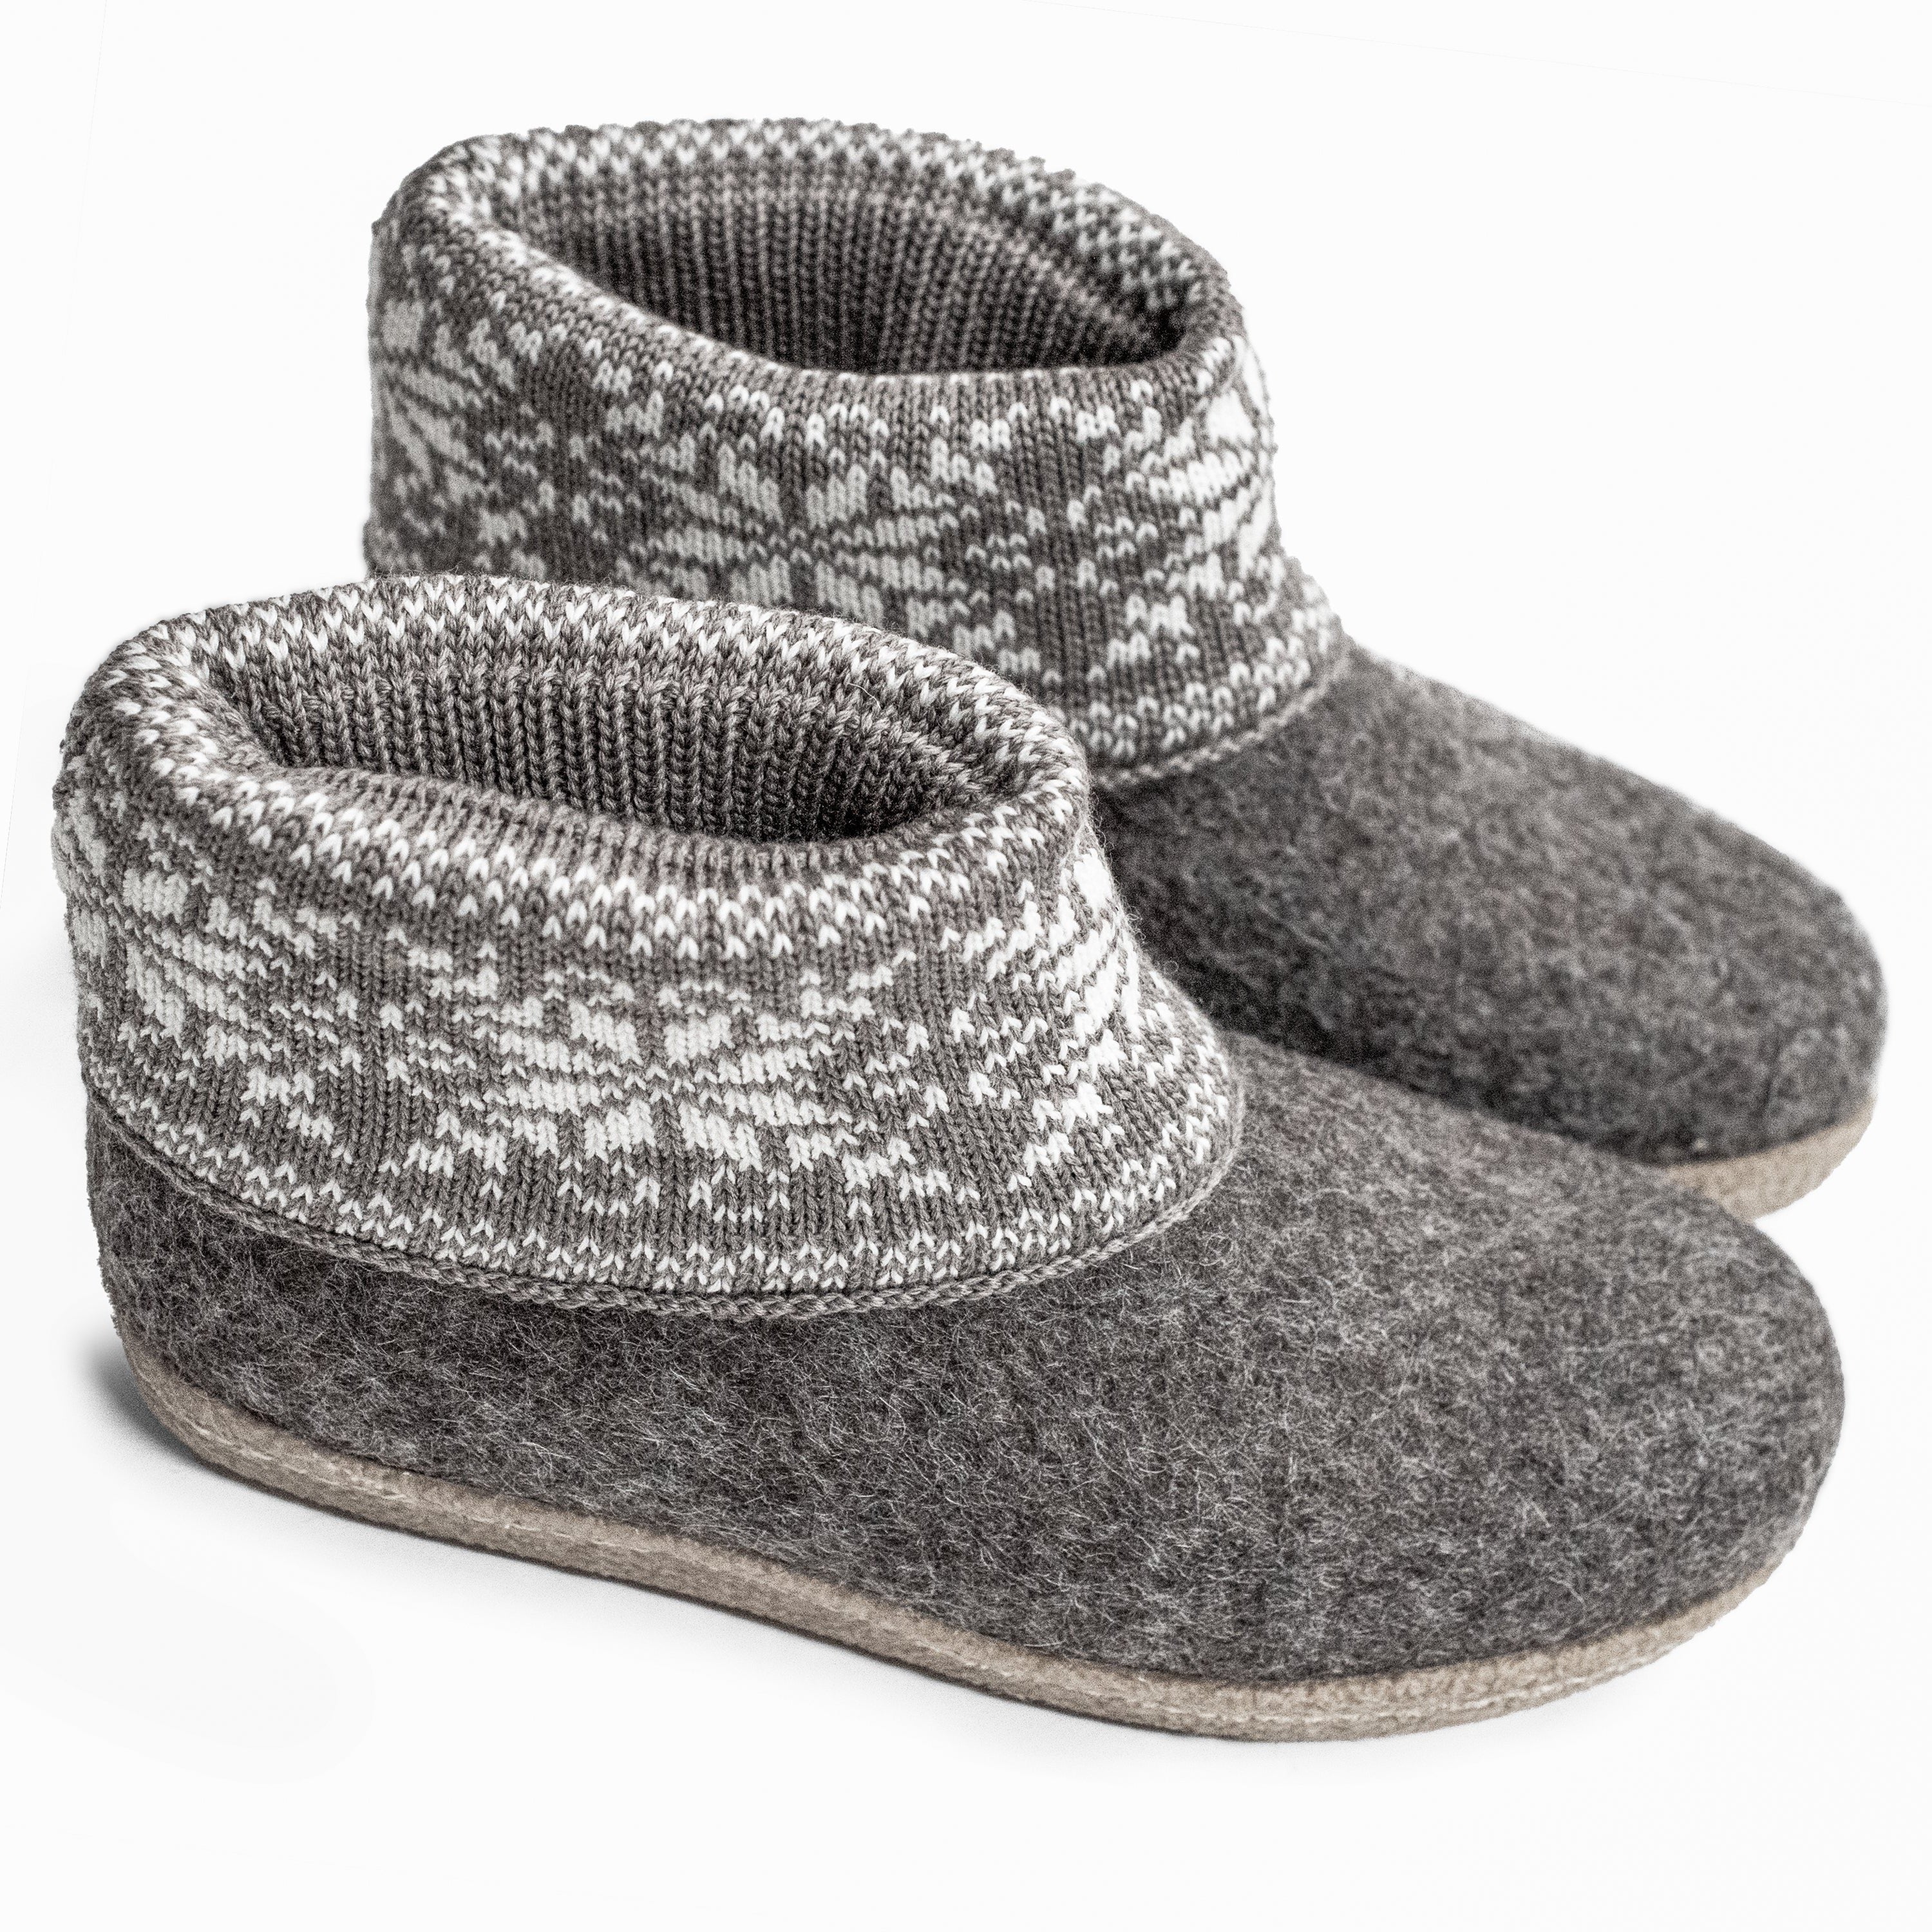 BureBure - Handcrafted Woolen Slippers for Your Comfort, Rest & Wellne ...